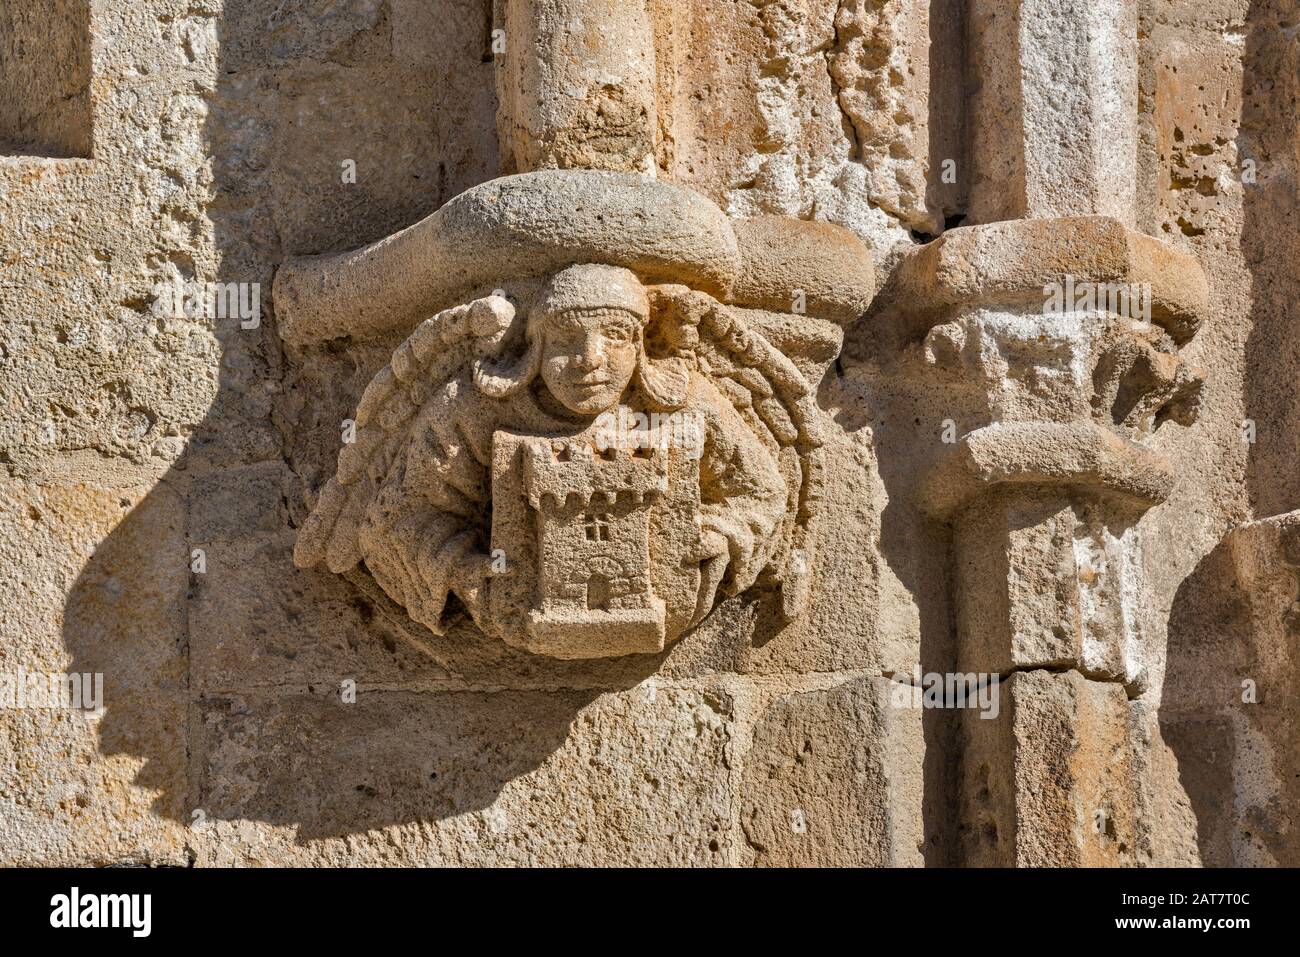 Carving in limestone at Basilica Romanica di San Gavino, 1080, Romanesque style church in Porto Torres, Sassari province, Sardinia, Italy Stock Photo